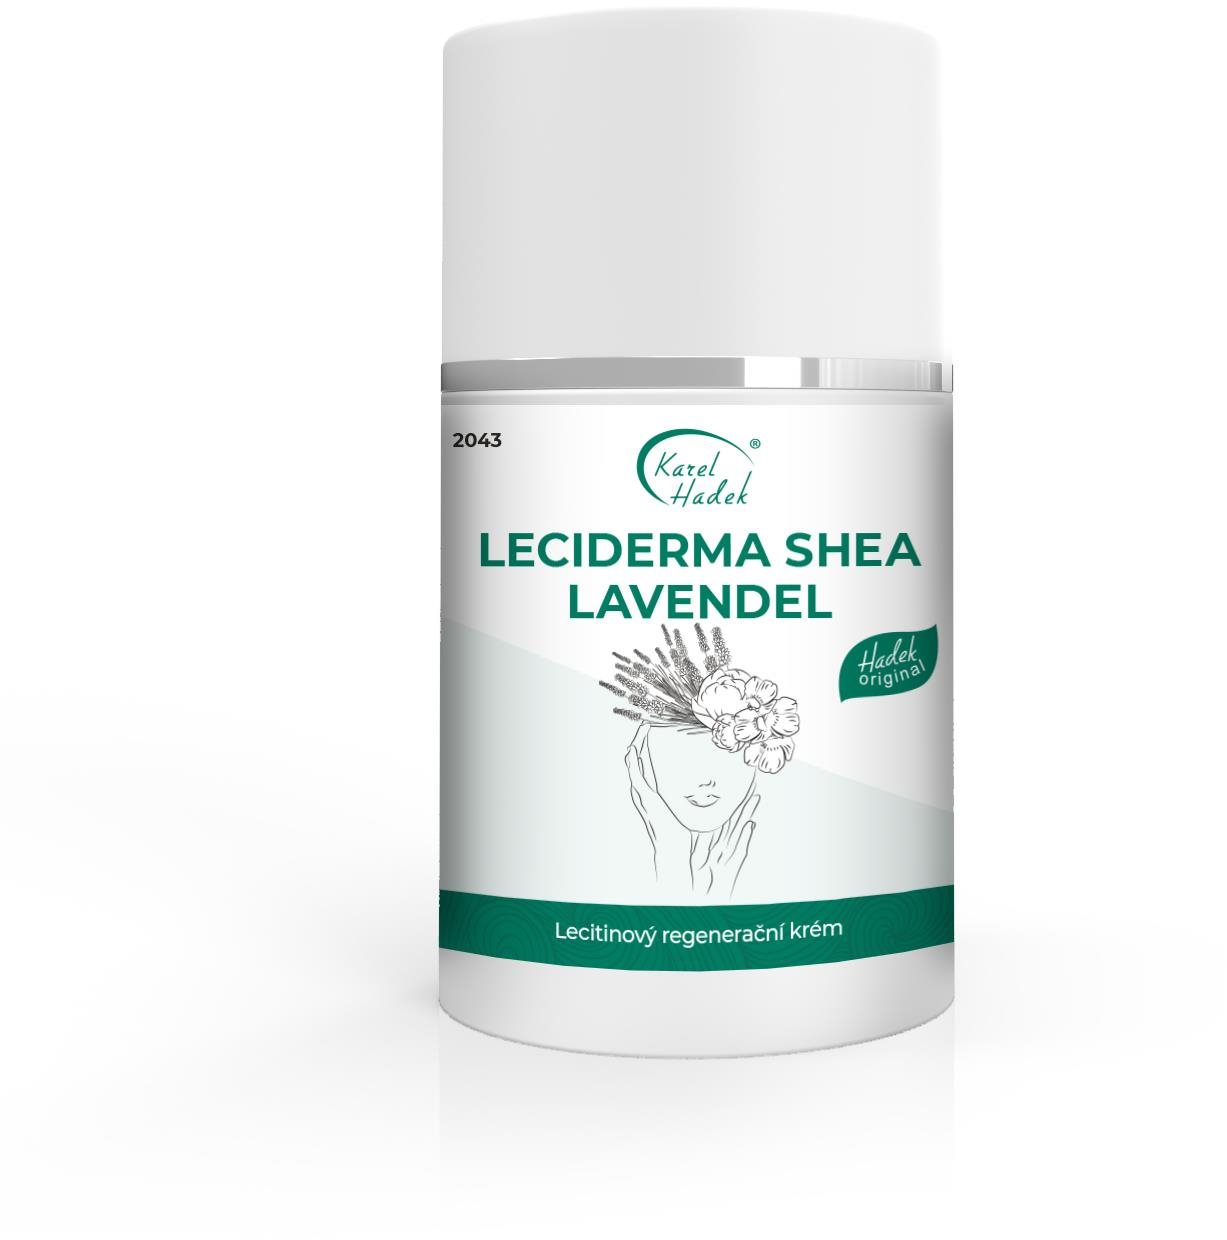 KAREL HADEK Leciderma Shea Lavendel 50 ml